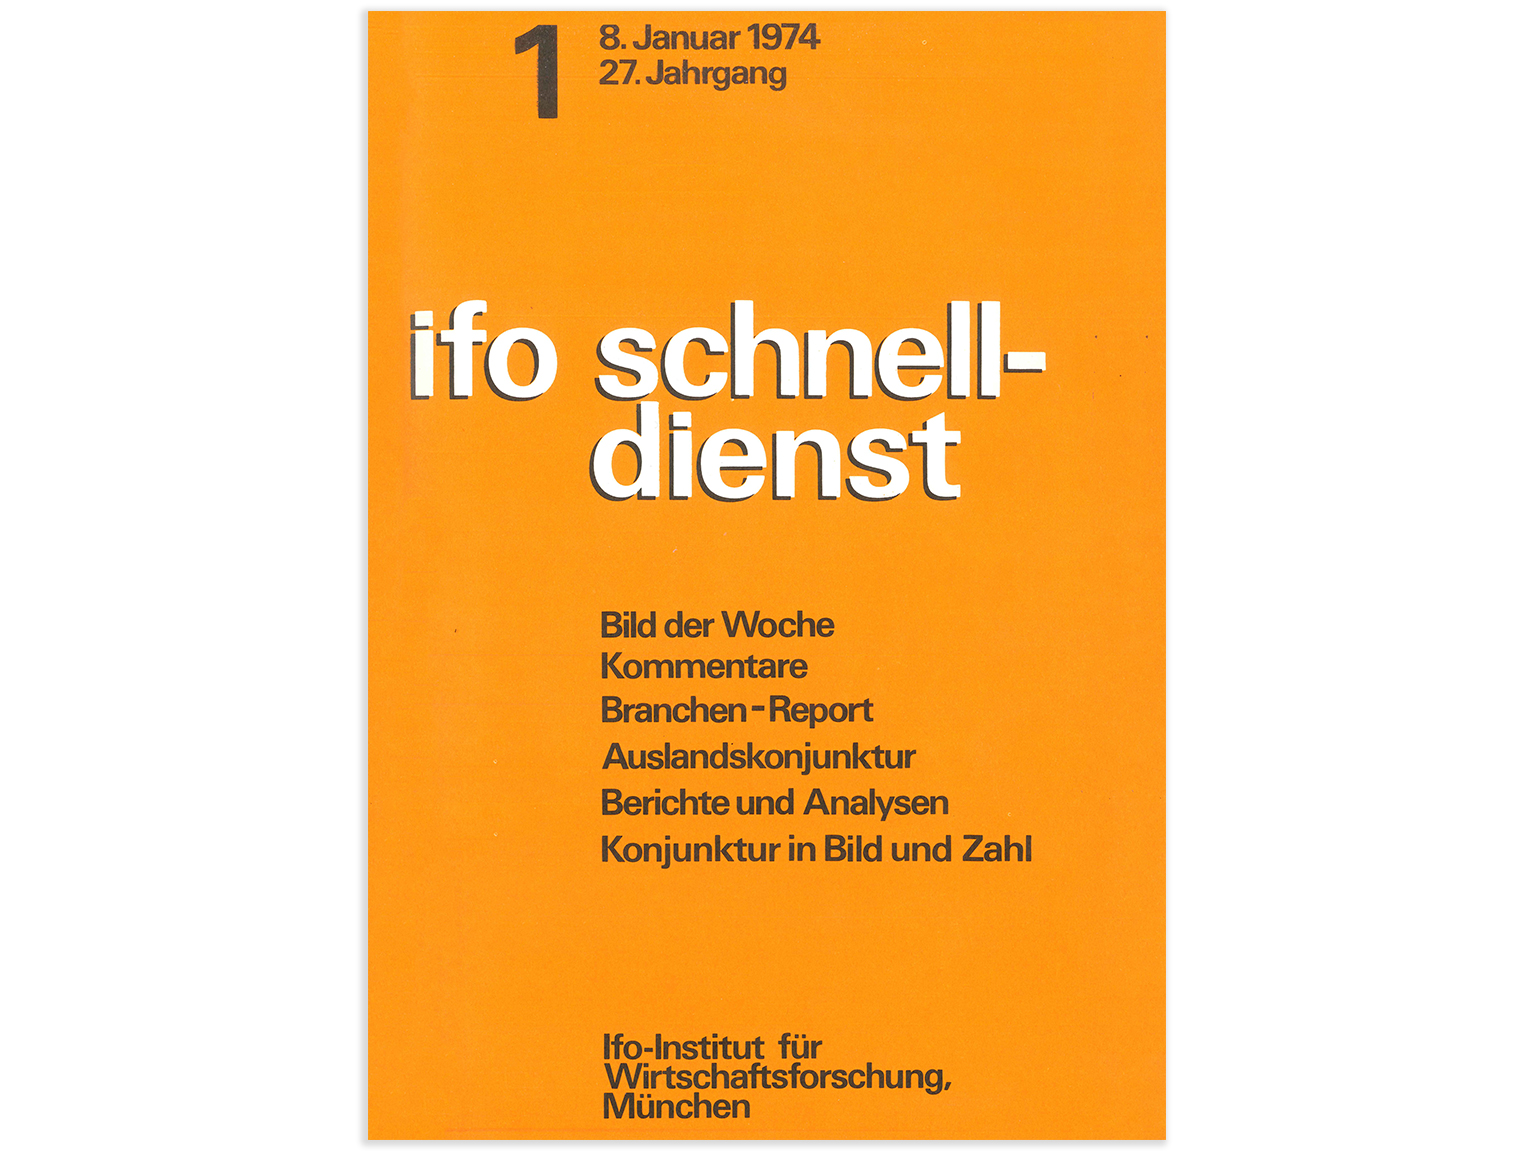 ifo Schnelldienst Cover 1974